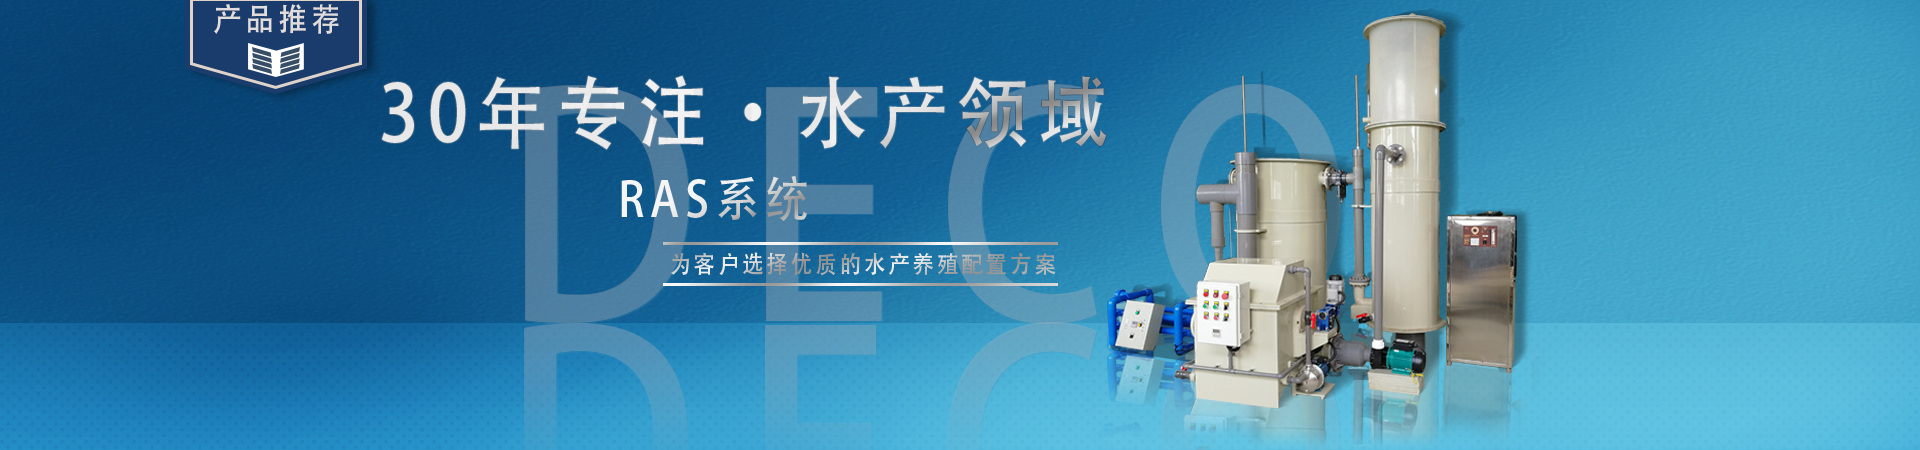 杭州赛特电气技术有限公司市场部CE